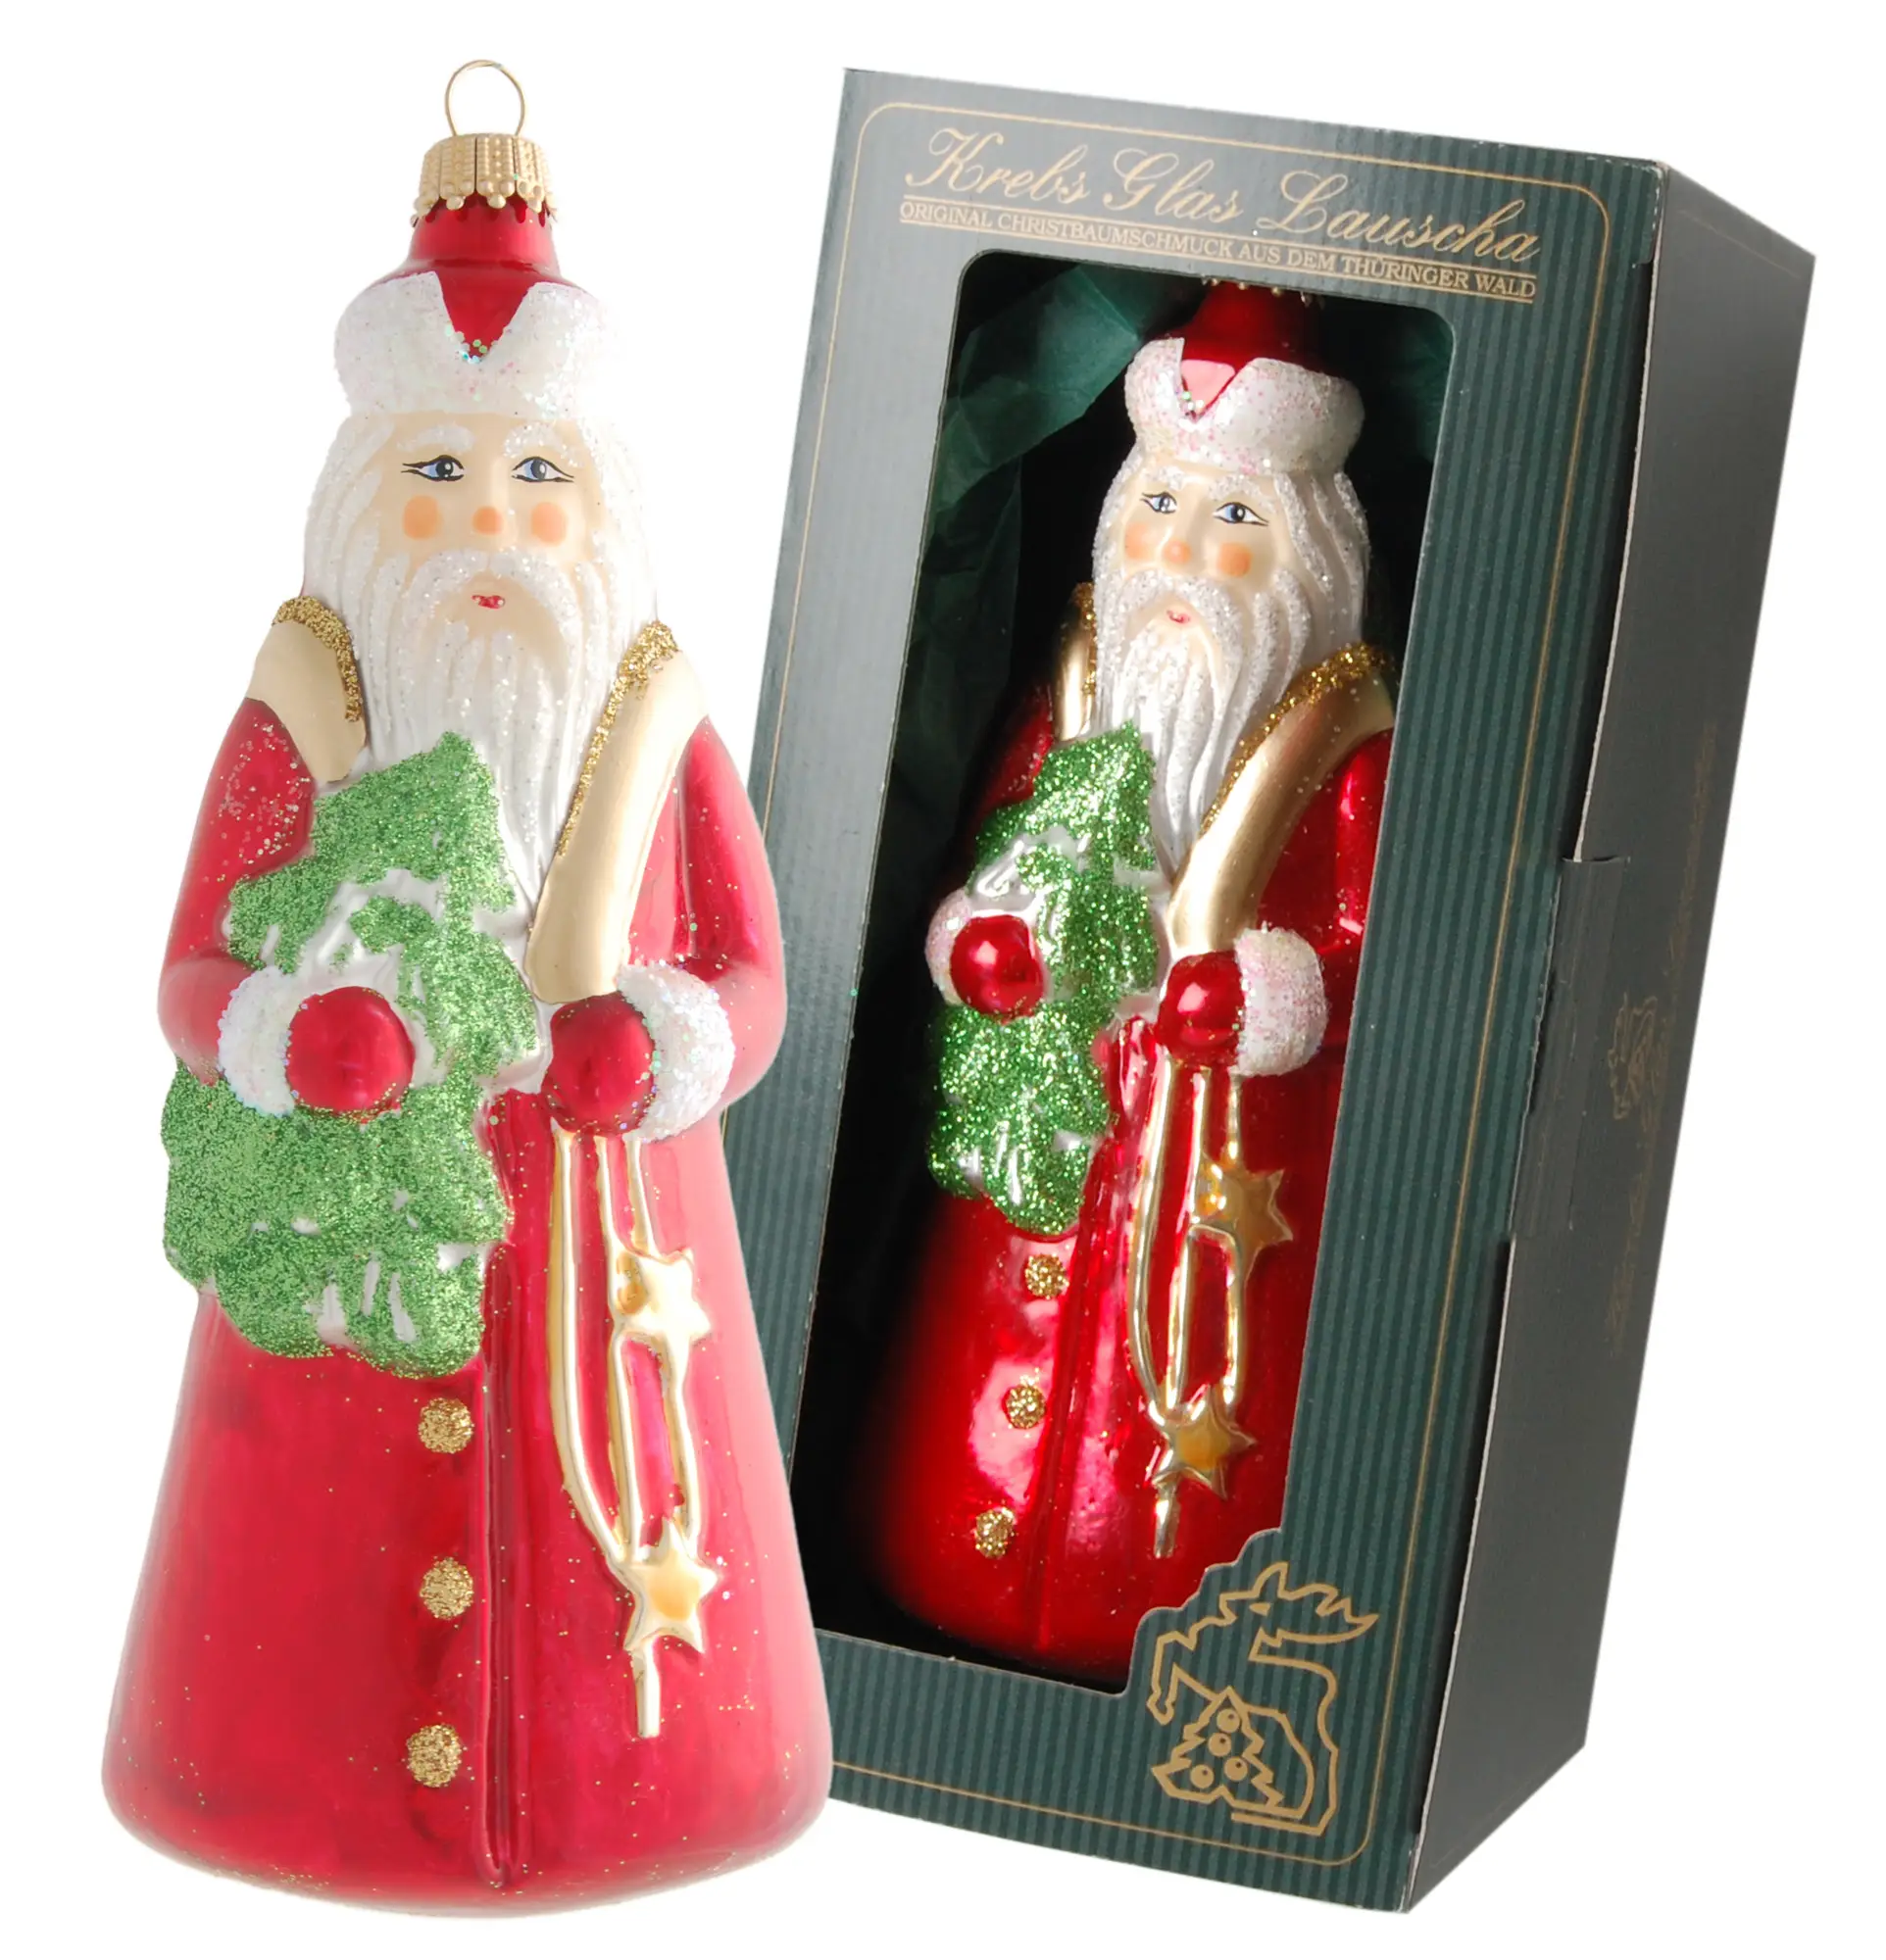 Rot/Gr眉n 15cm Santa mit Baum aus Glas